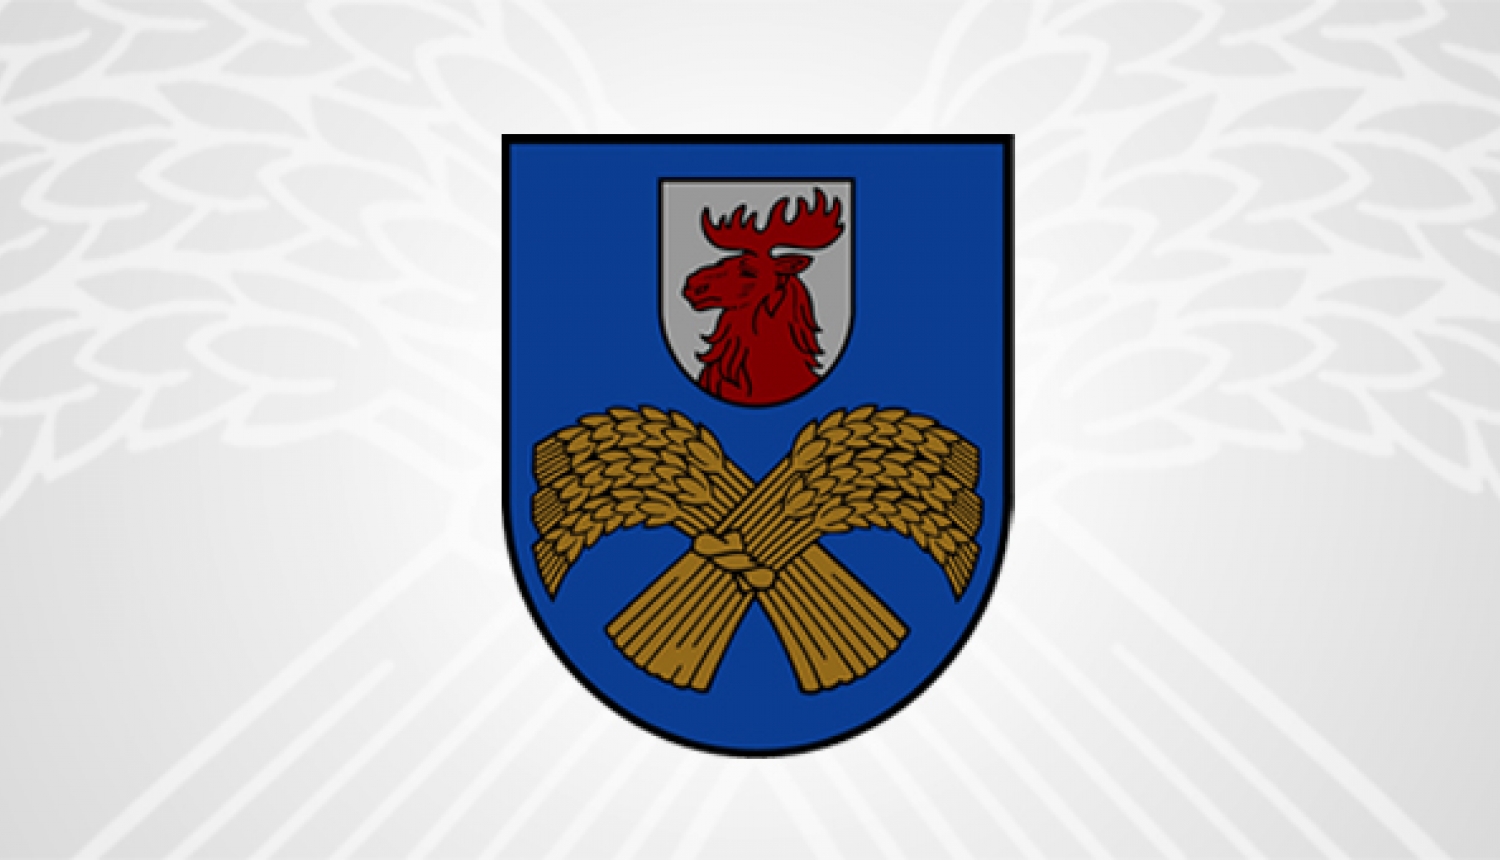 Jelgavas novada pašvaldības ģerbonis